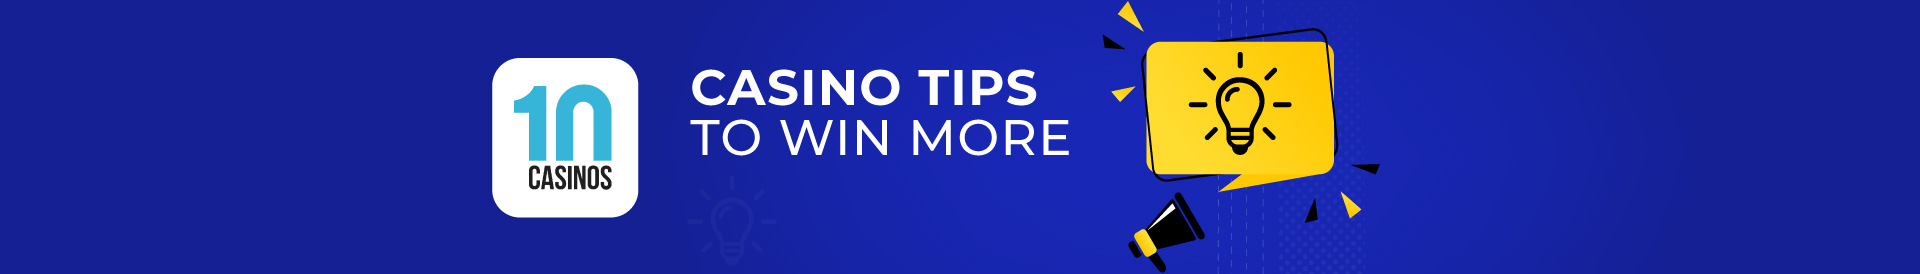 top 10 casino tips to win more desktop